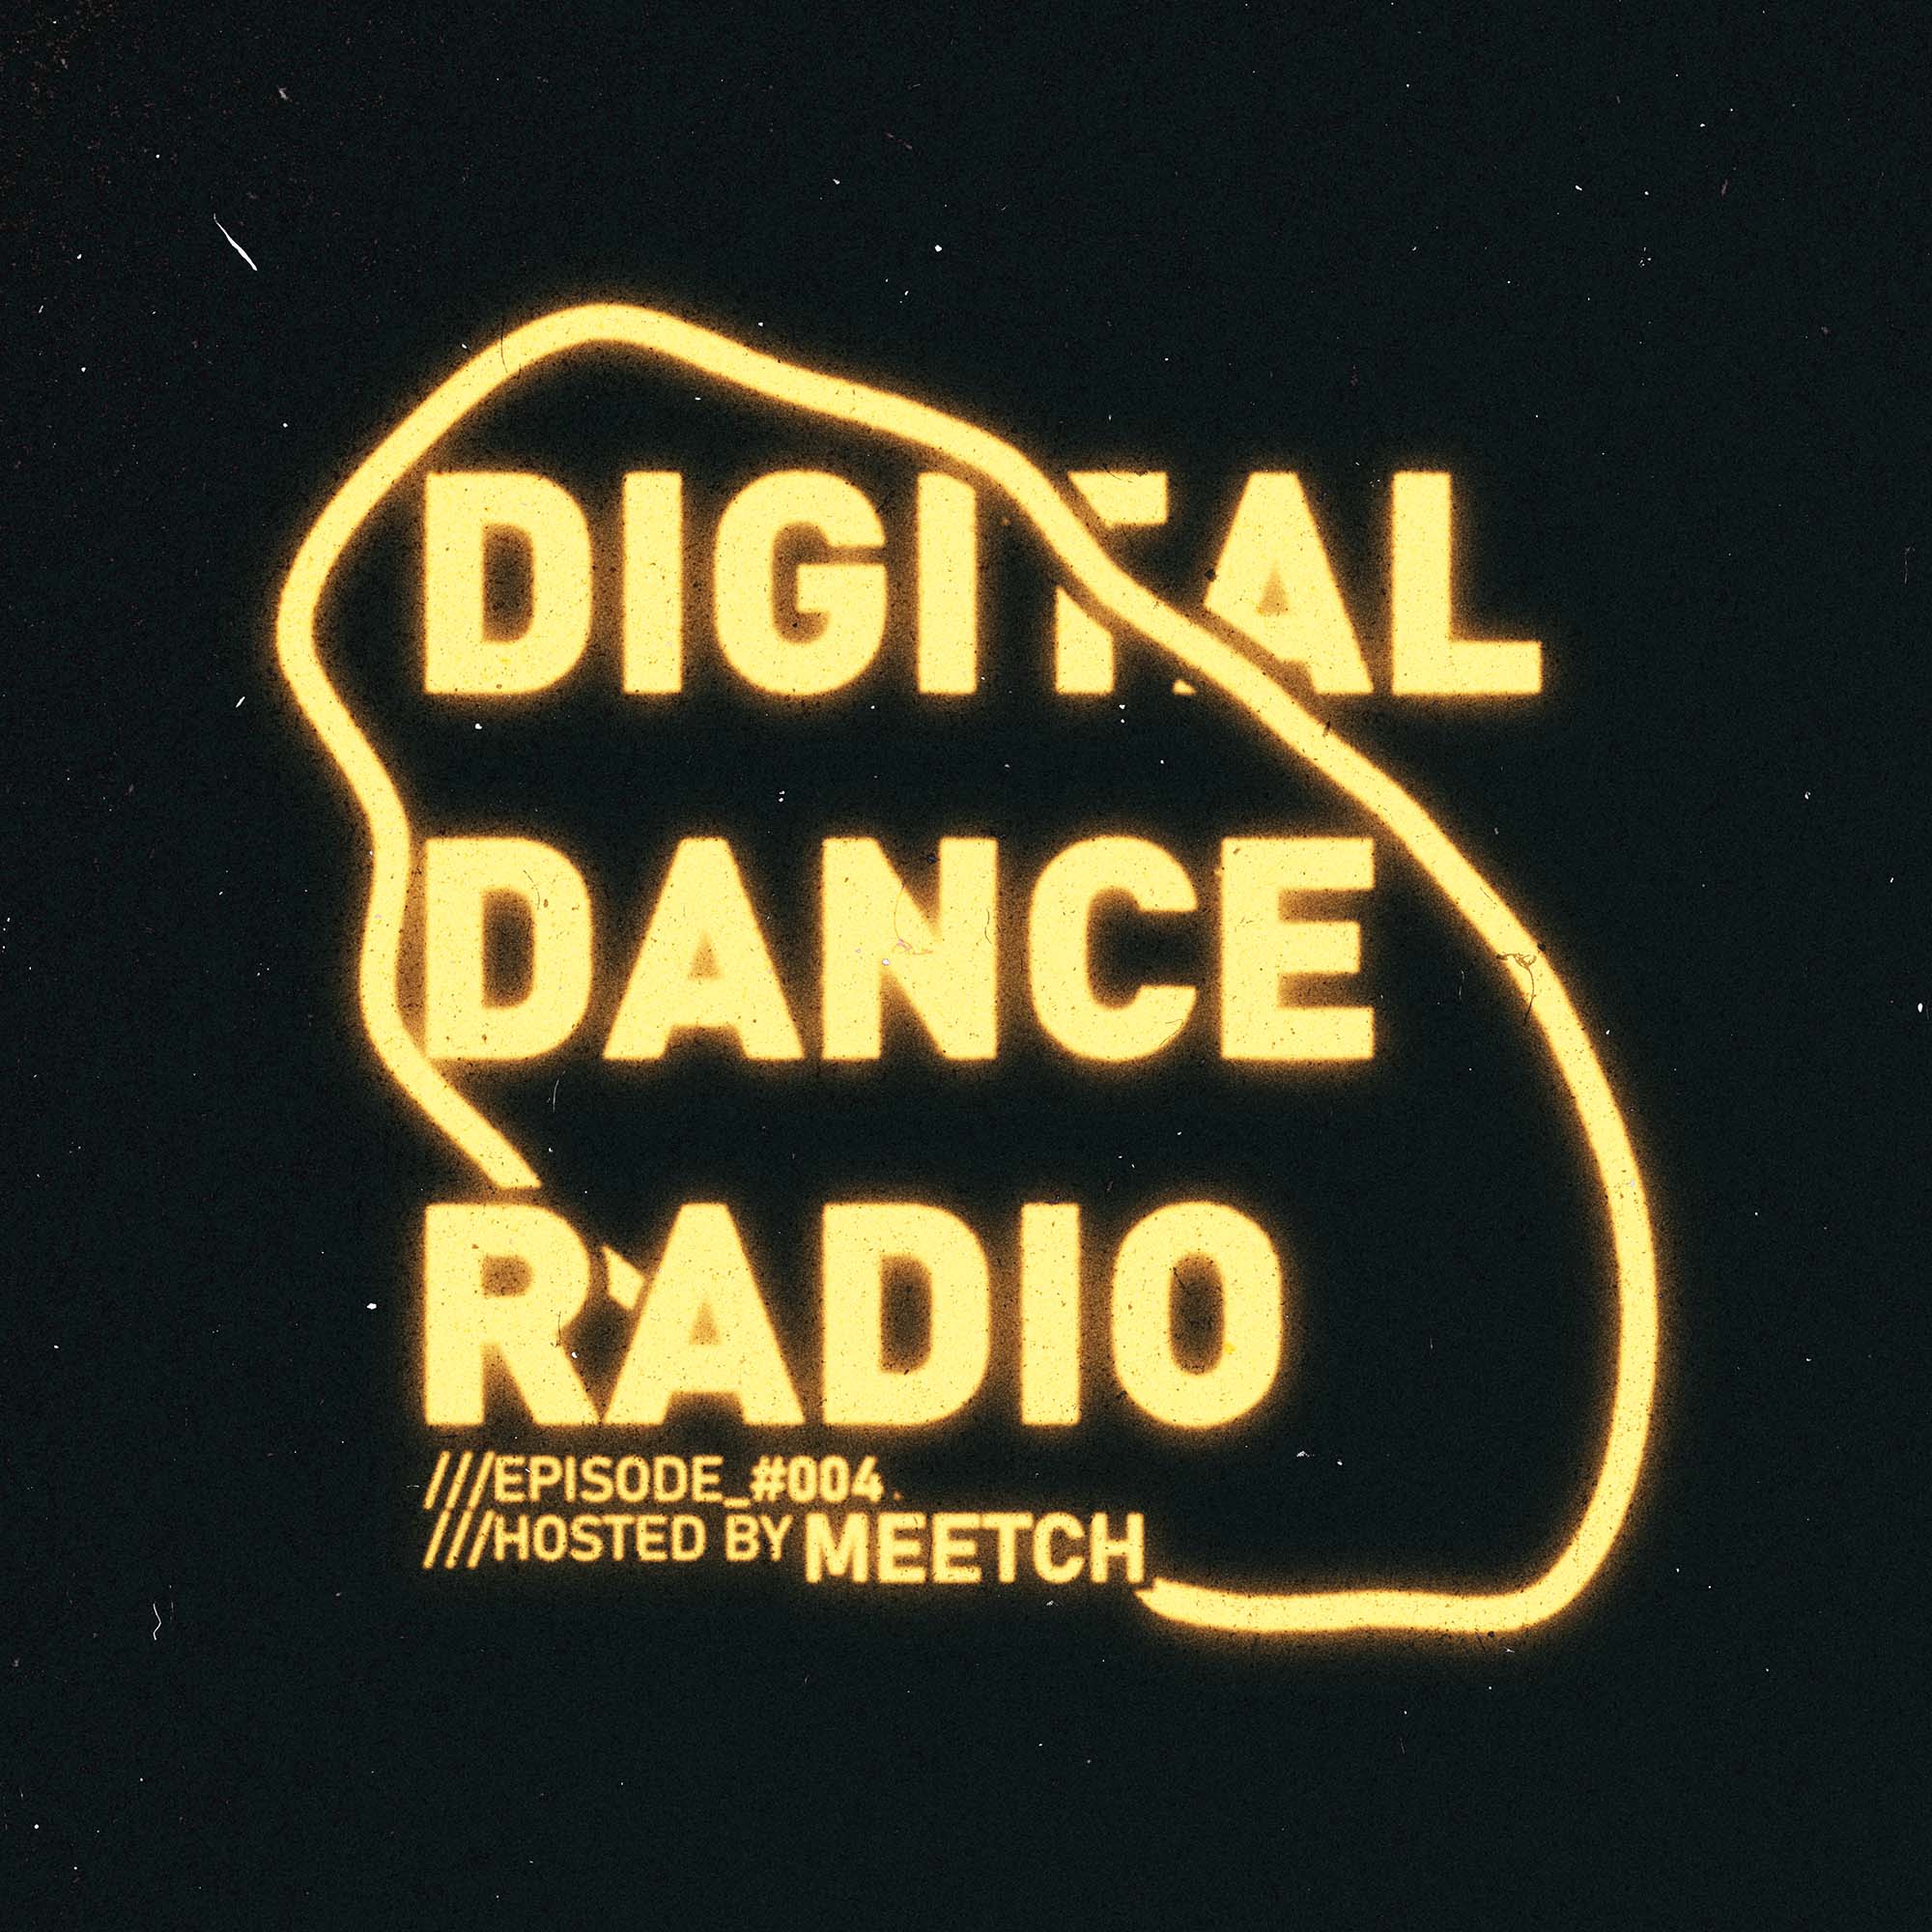 Digital Dance Radio by Meetch